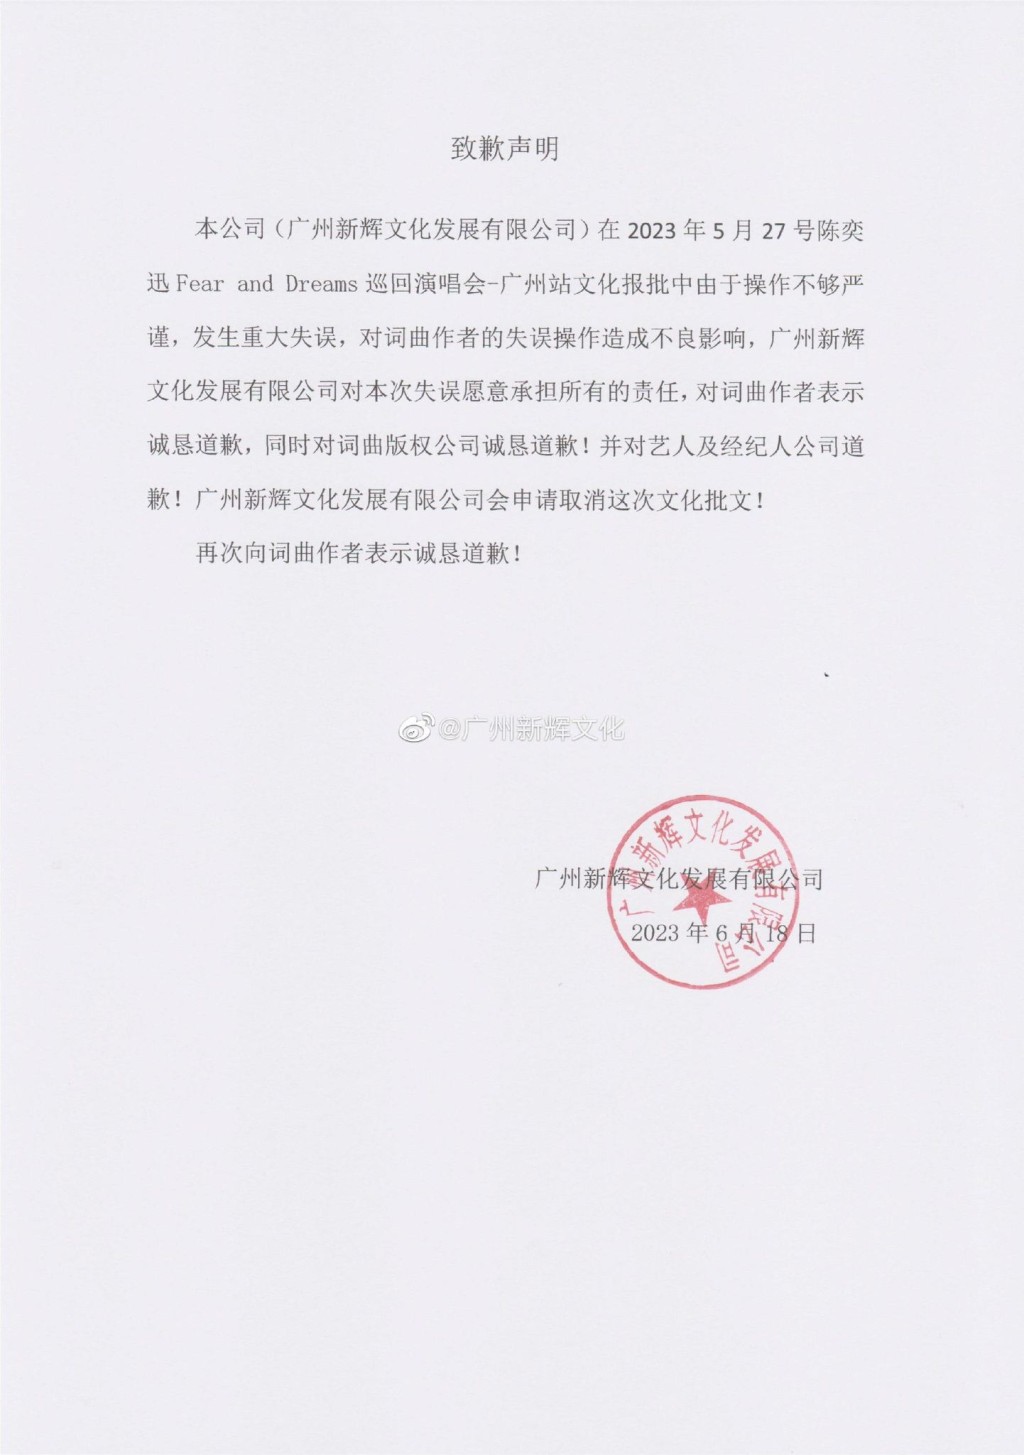 昨日主辦方「廣州新輝文化」微博發聲明致歉。